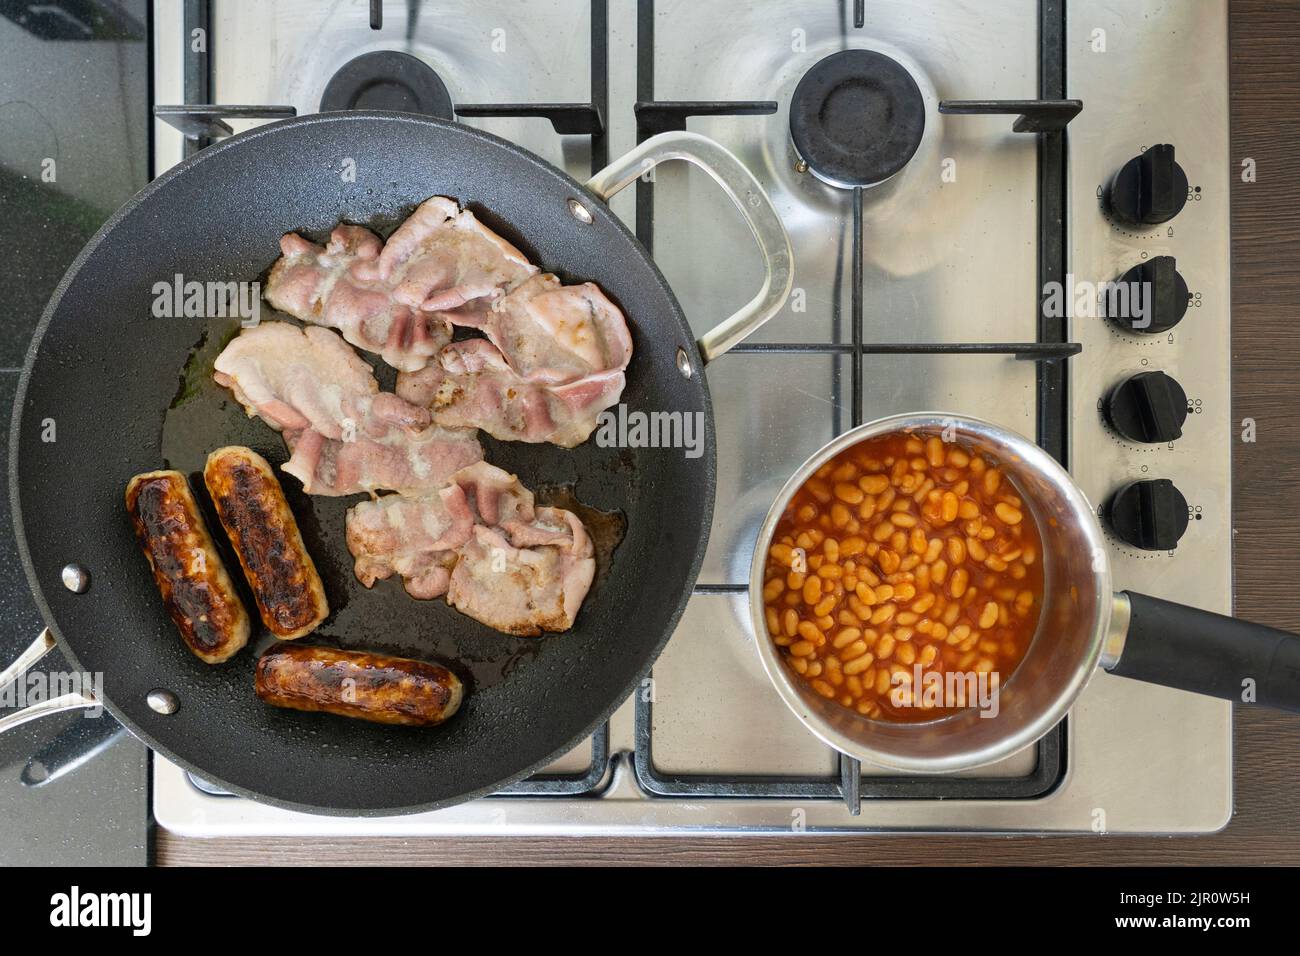 Les ingrédients traditionnels du petit-déjeuner anglais cuisent et friture sur une cuisinière à gaz. Bacon, saucisses et haricots. ROYAUME-UNI. Concept - manger malsain Banque D'Images